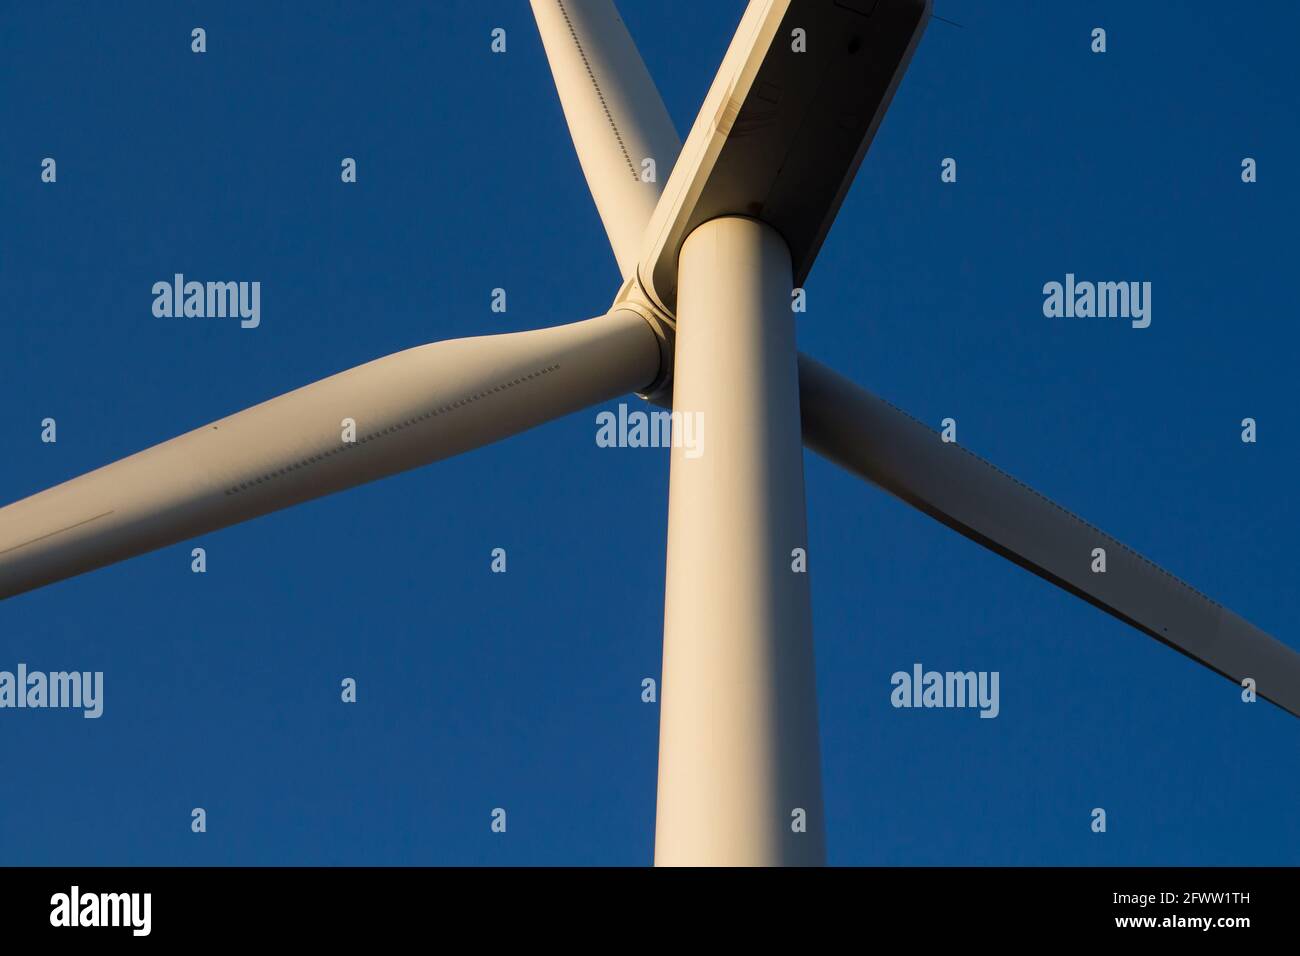 Nahaufnahme der Windmühle in Sigacik / Seferihisar in Izmir / Türkei. Windkraftanlage für saubere, erneuerbare Energie. Nachhaltigkeit Stockfoto